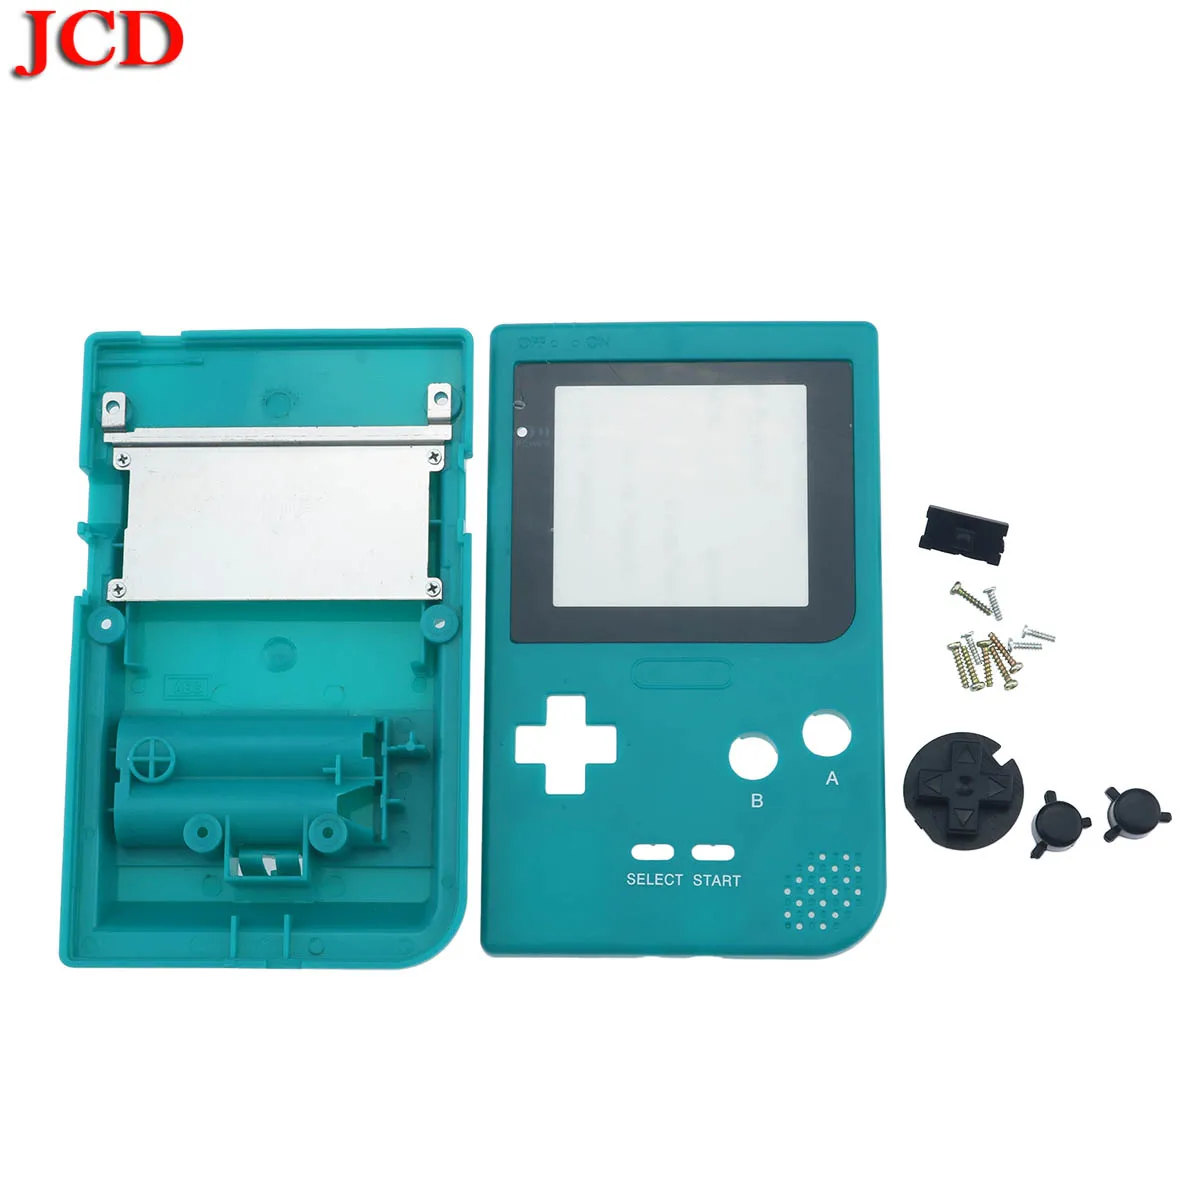 JCD полный Чехол Корпус Замена для Gameboy Карманная игровая консоль для GBP серый чехол с кнопками комплект - Цвет: No16